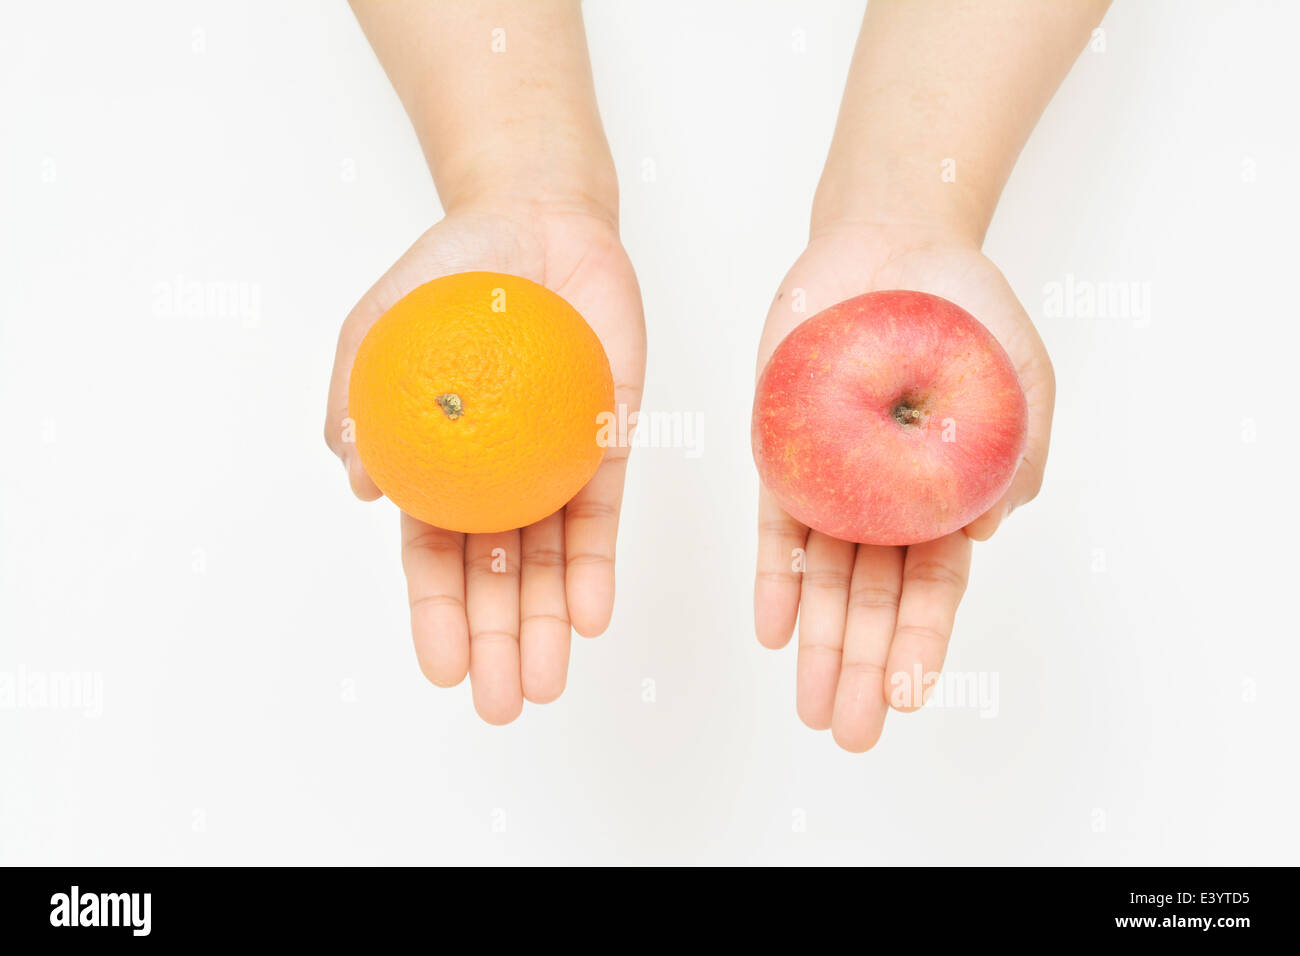 Apple o arancione vuoi scegliere? Foto Stock